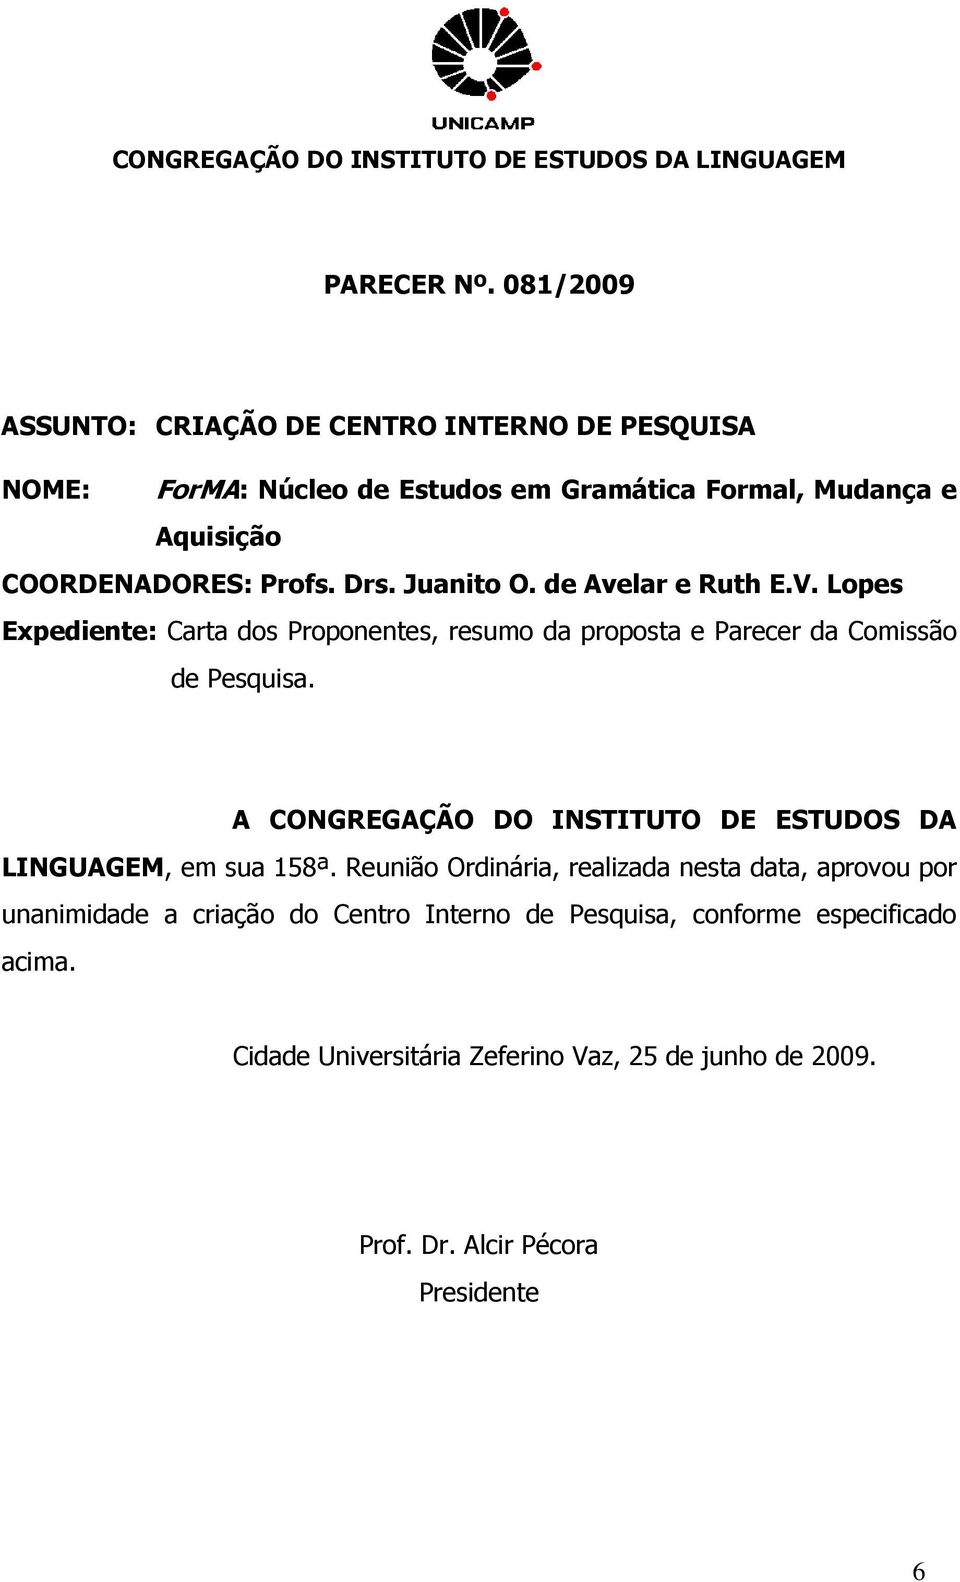 Juanito O. de Avelar e Ruth E.V. Lopes Expediente: Carta dos Proponentes, resumo da proposta e Parecer da Comissão de Pesquisa.